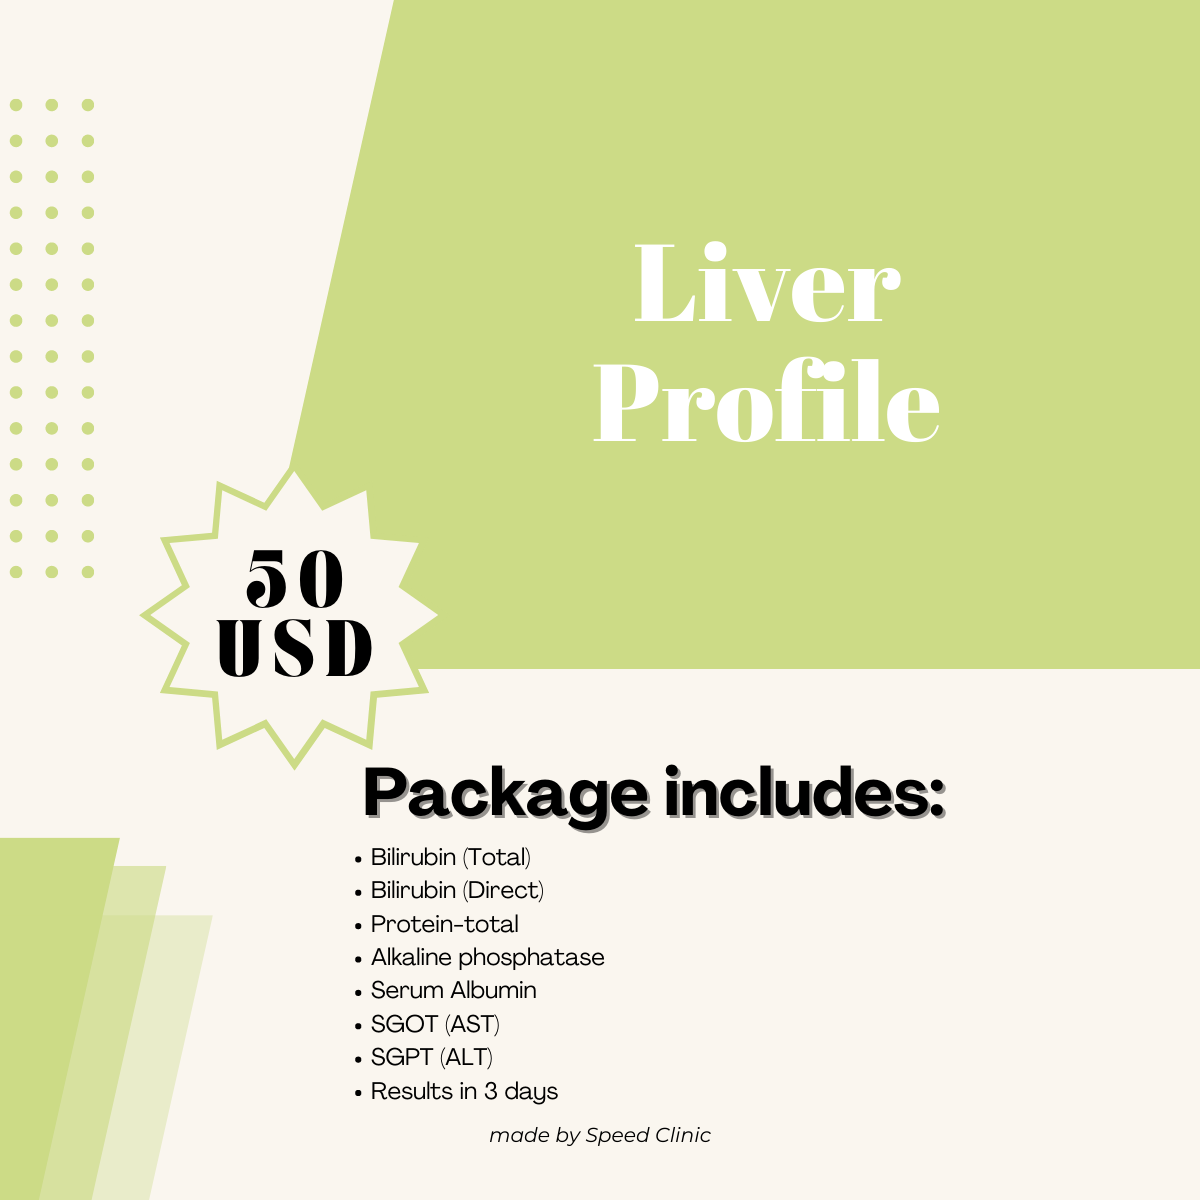 Liver profile